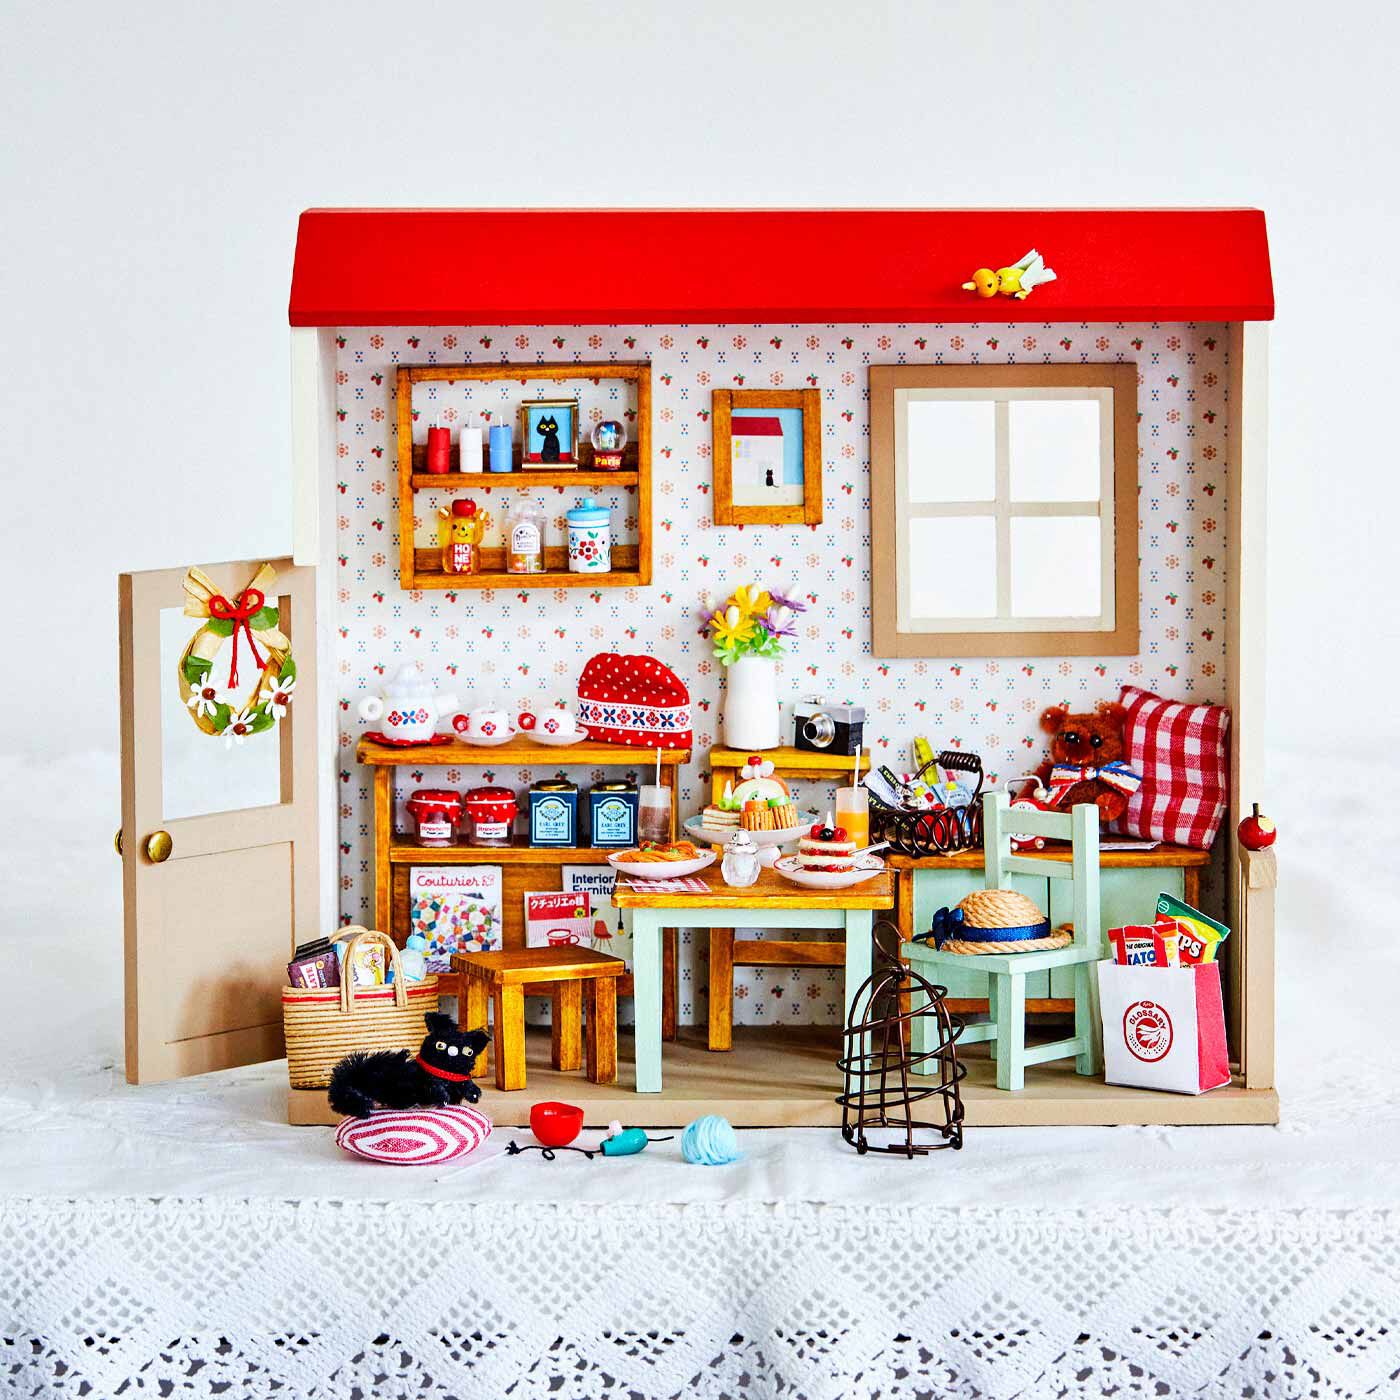 ハンドメイド ☆ミニチュアドールハウス ☆赤い屋根のお家 - おもちゃ/人形